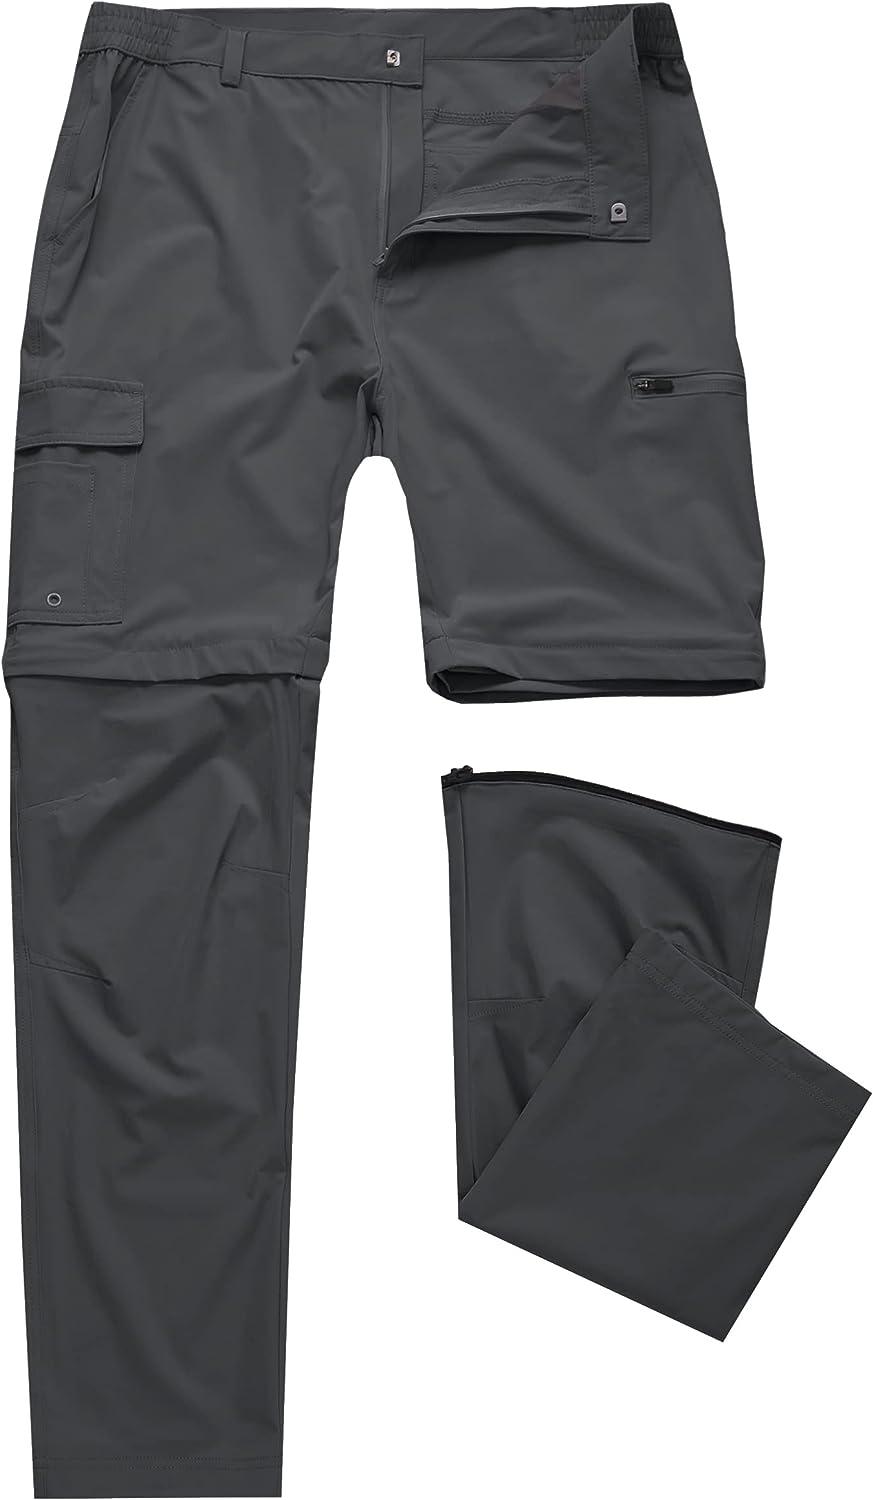 Mens Hiking Convertible Pants Waterproof Lightweight Quick Dry Zip